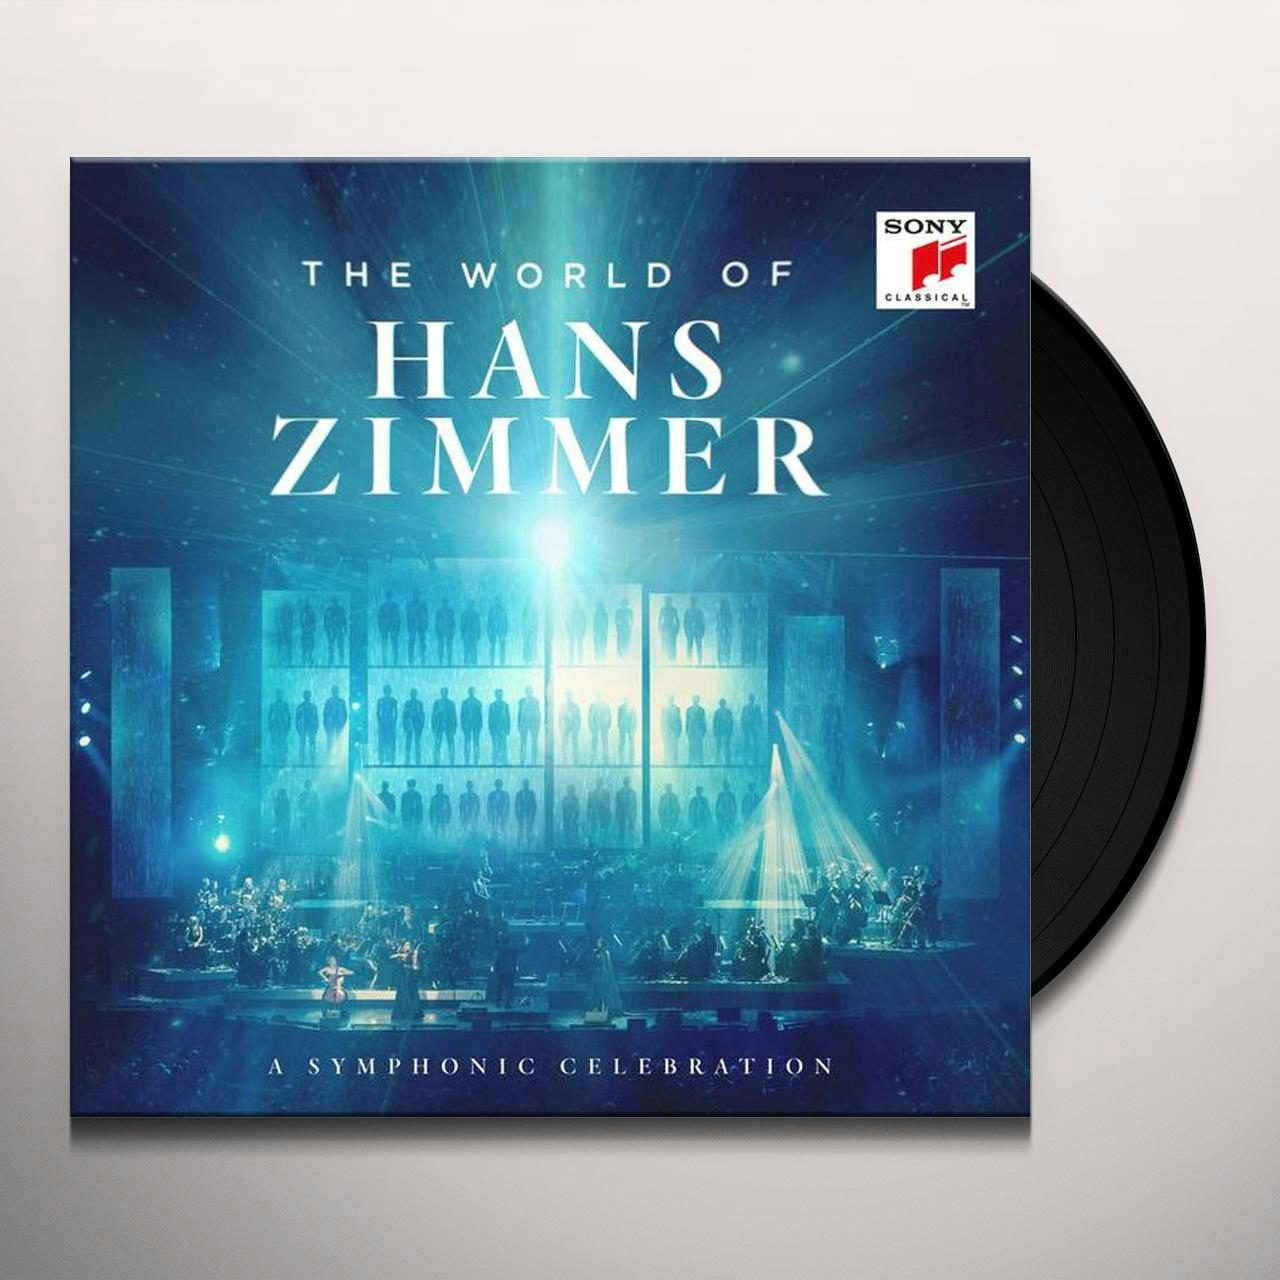 Zimmer orchestra. Hans Zimmer - the World of Hans Zimmer - a Symphonic Celebration. The World of Hans Zimmer Vienna. Ханс Циммер альбомы. World of Hans Zimmer 2 пластинки.